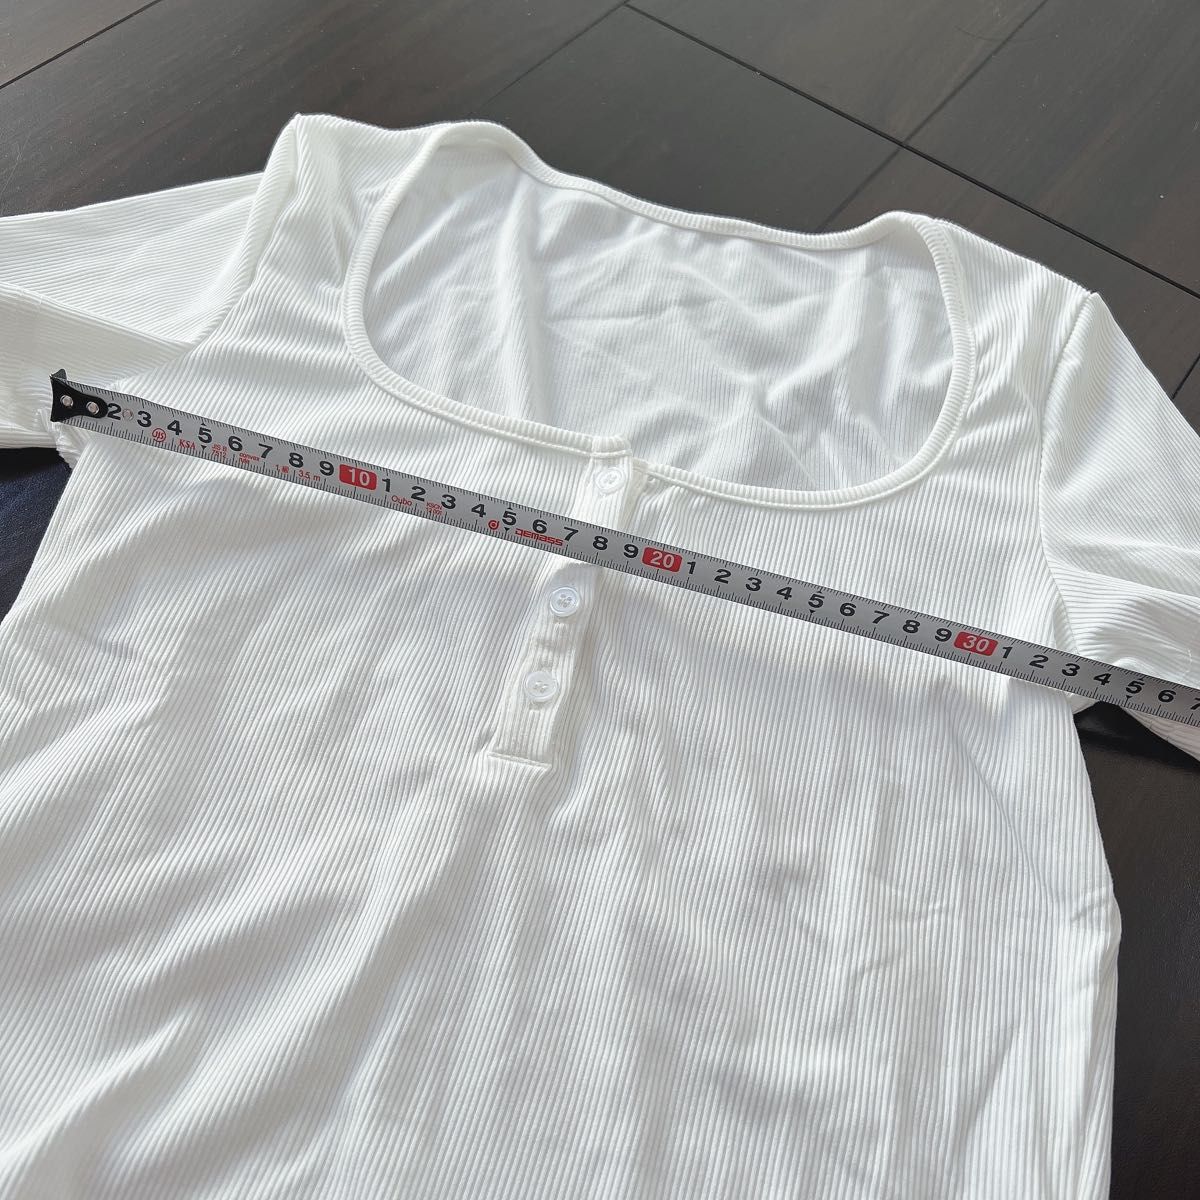 新品未使用 カットソー 半袖 Tシャツ チビT チビティー ショート丈 ホワイト 白 Mサイズ フリー Sサイズ